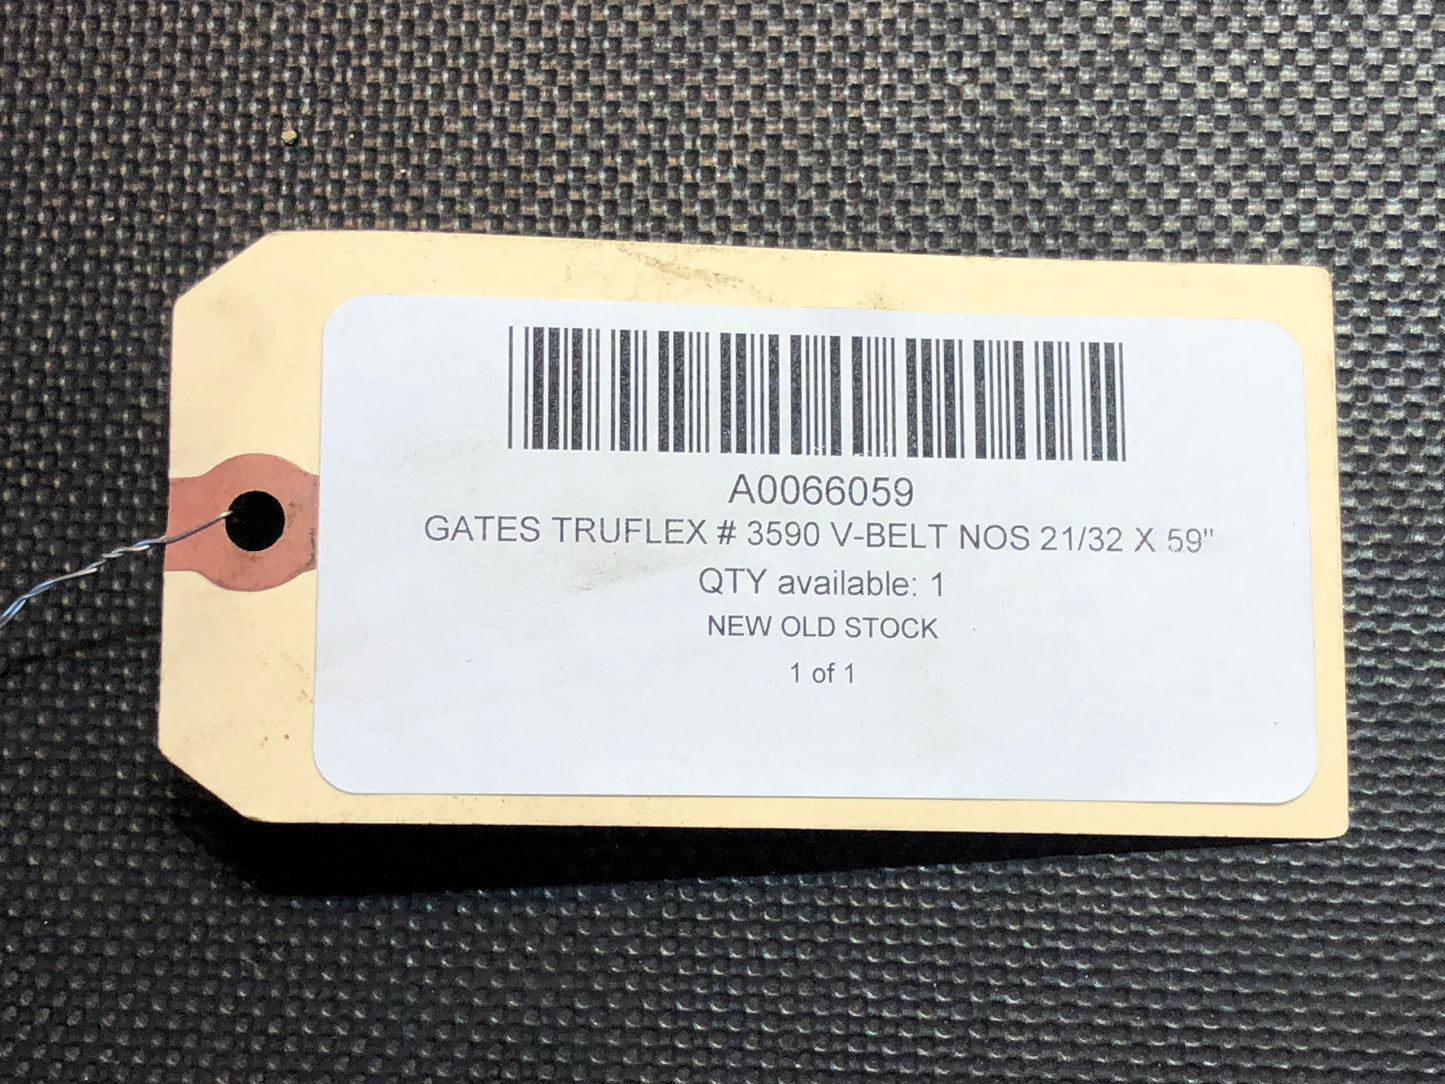 Gates Truflex # 3590 V-Belt NOS 21/32 X 59"